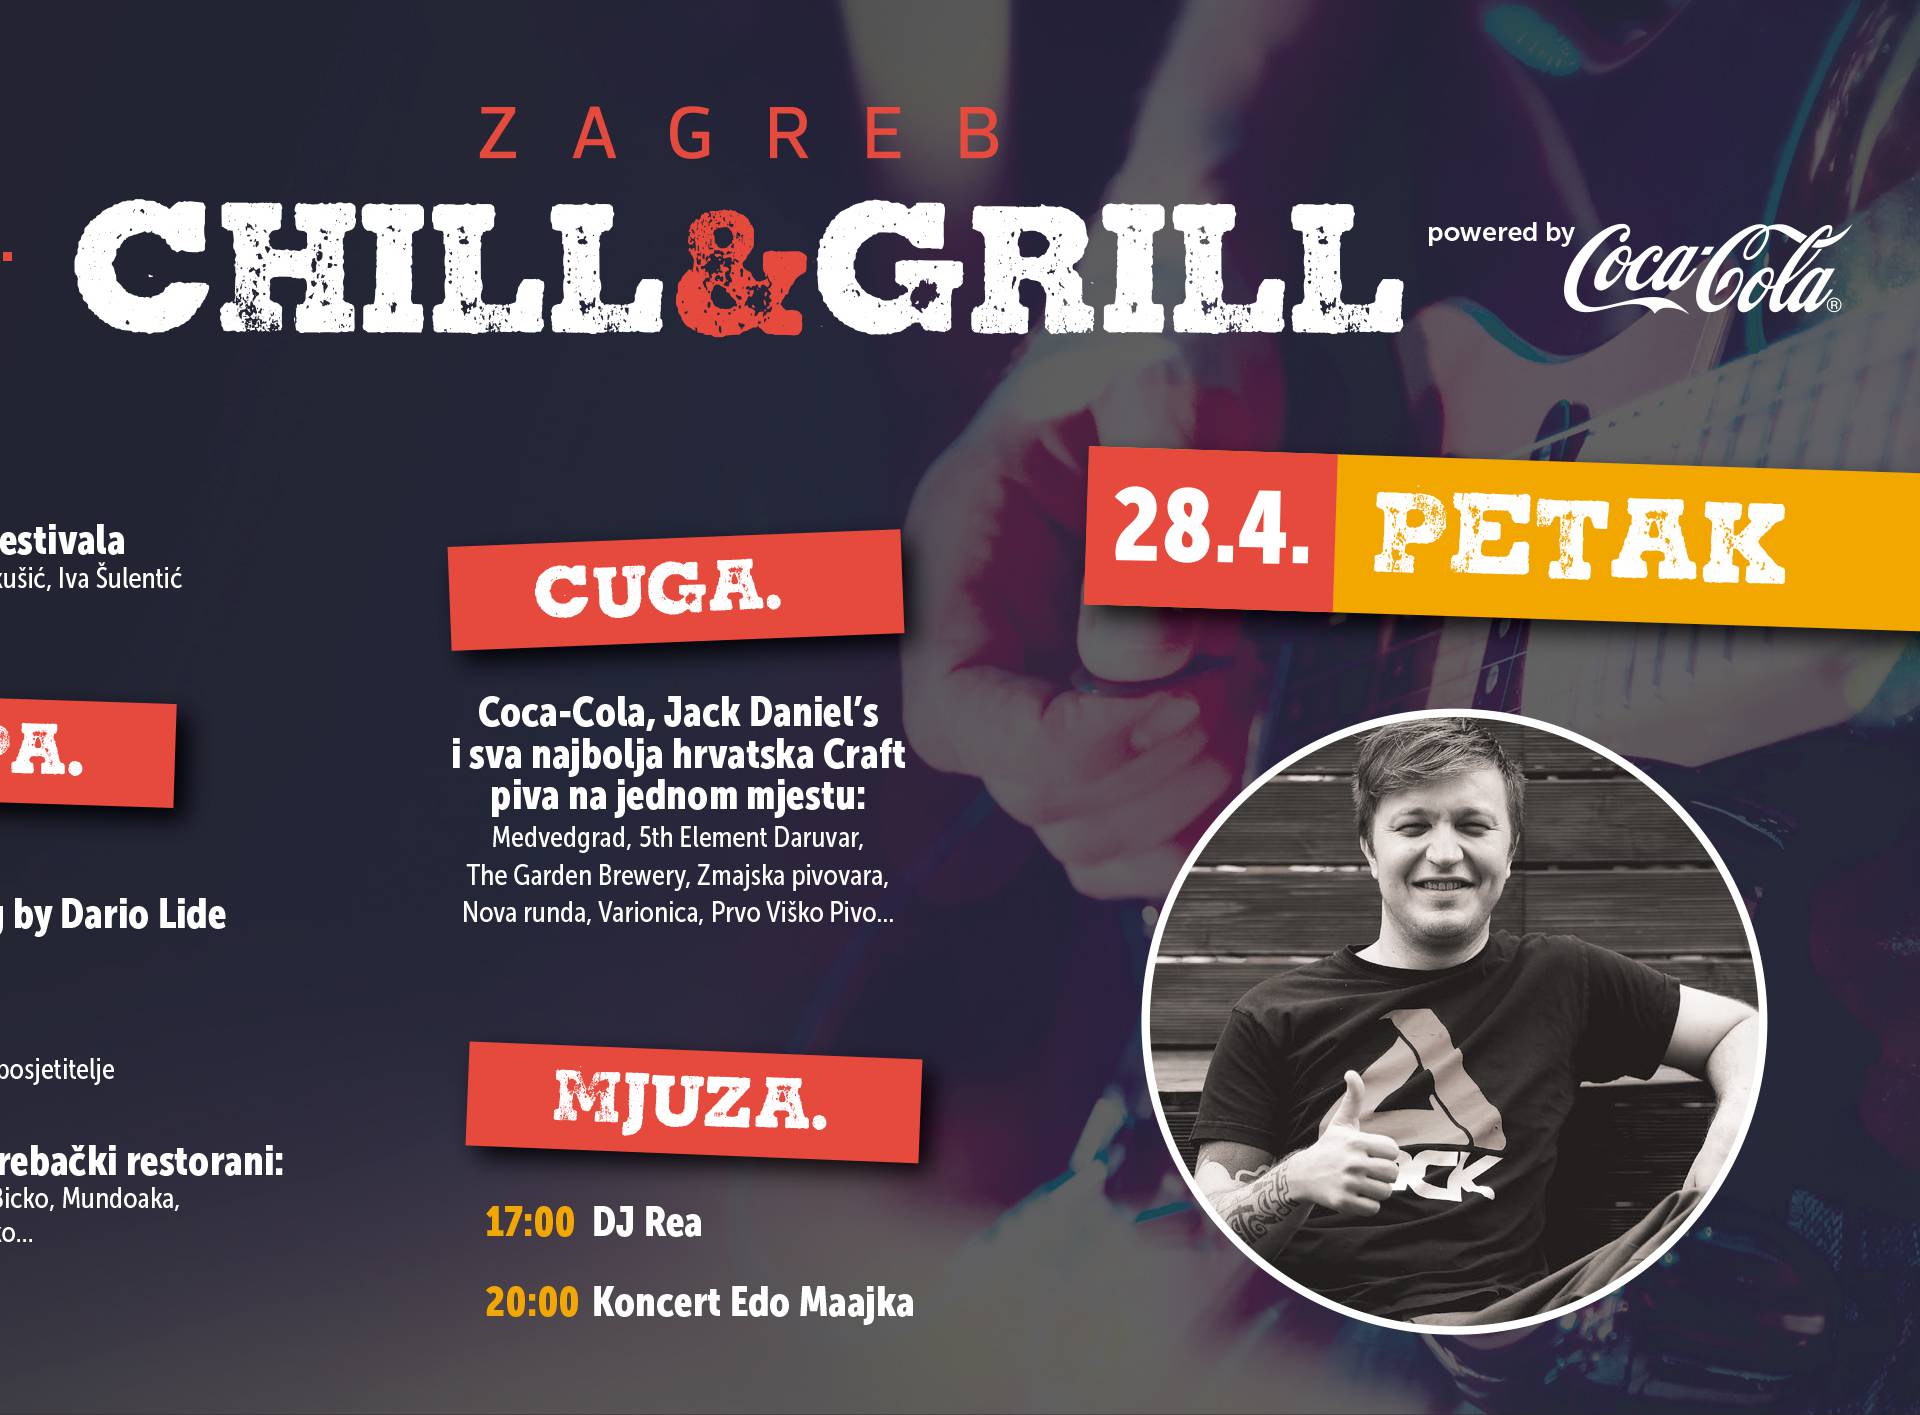 Zagreb Chill&Grill! Edo Maajka sutra će otvoriti tulum godine